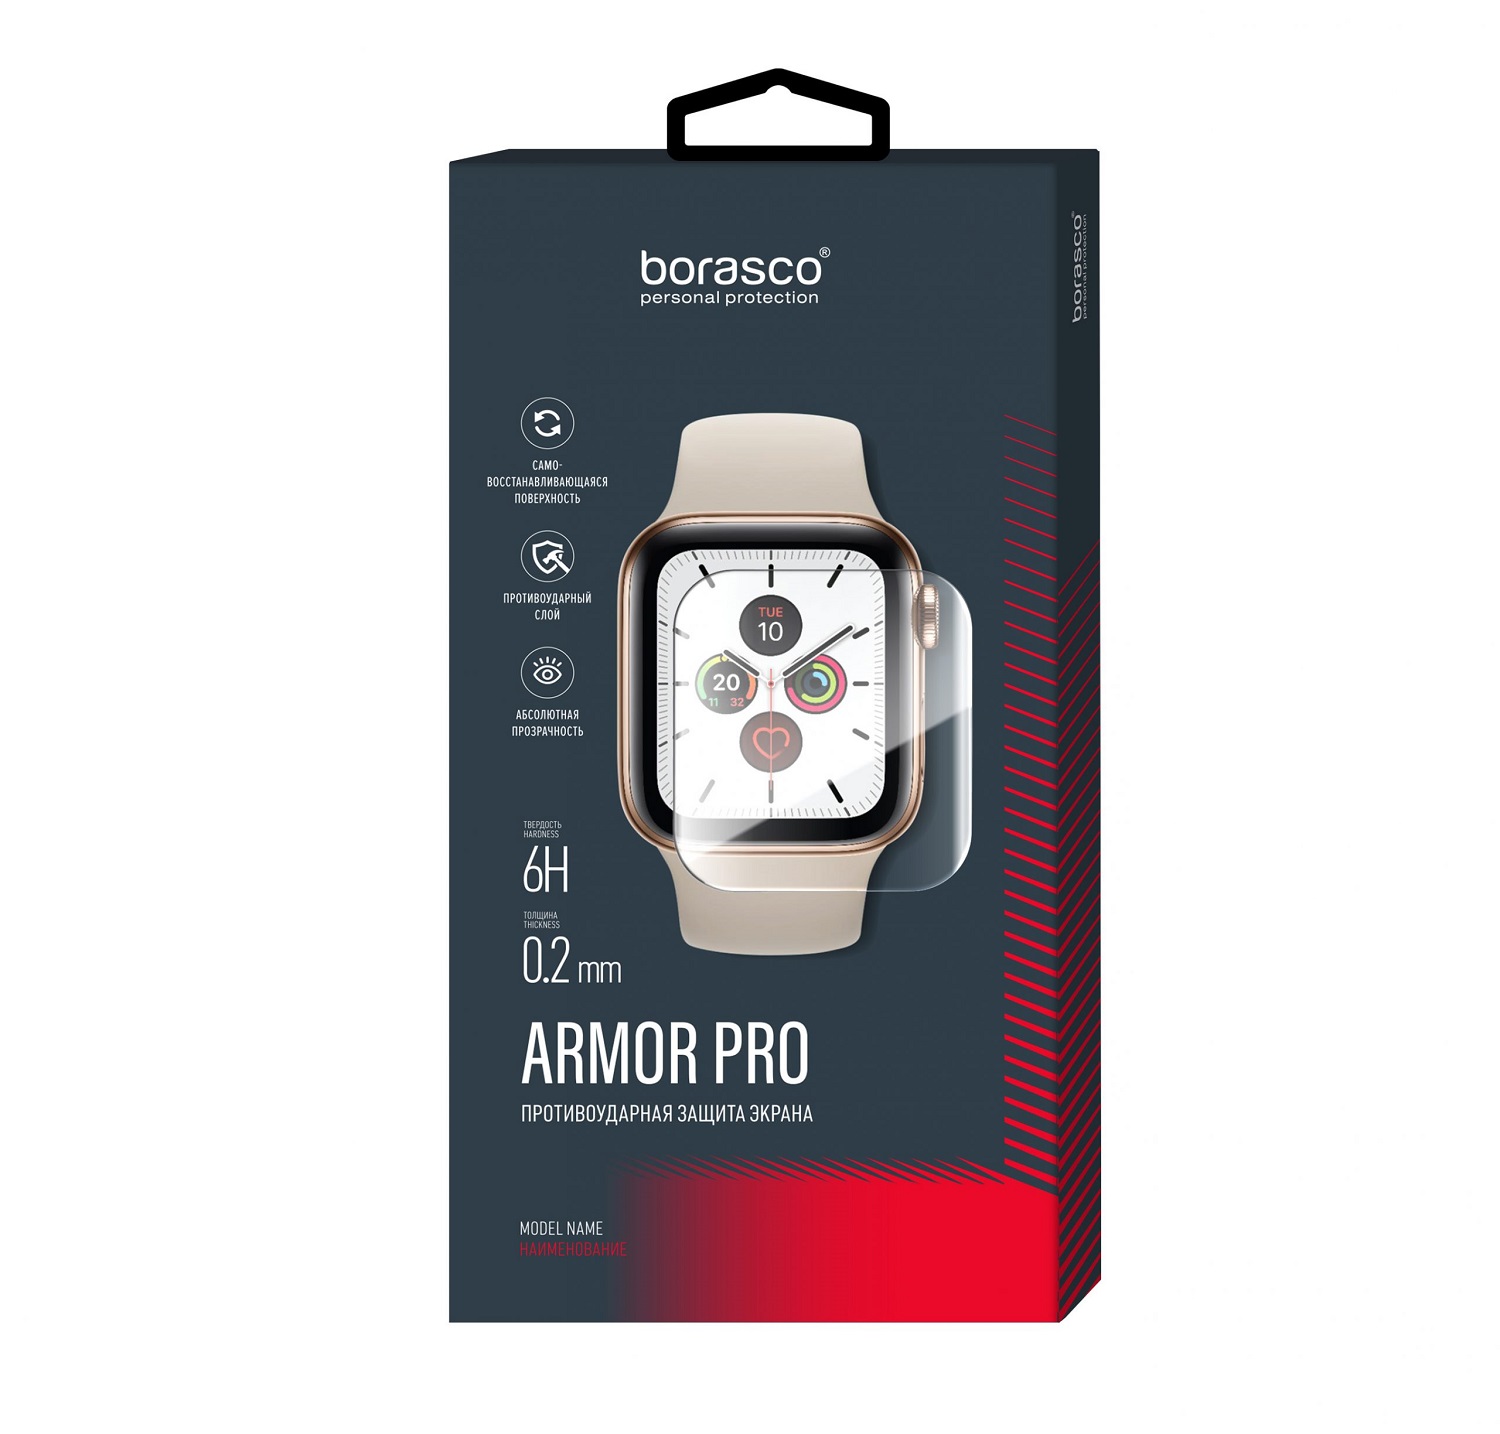 Защита экрана BoraSCO Armor Pro для Huawei Watch fit защита экрана borasco armor pro для oneplus nord ce